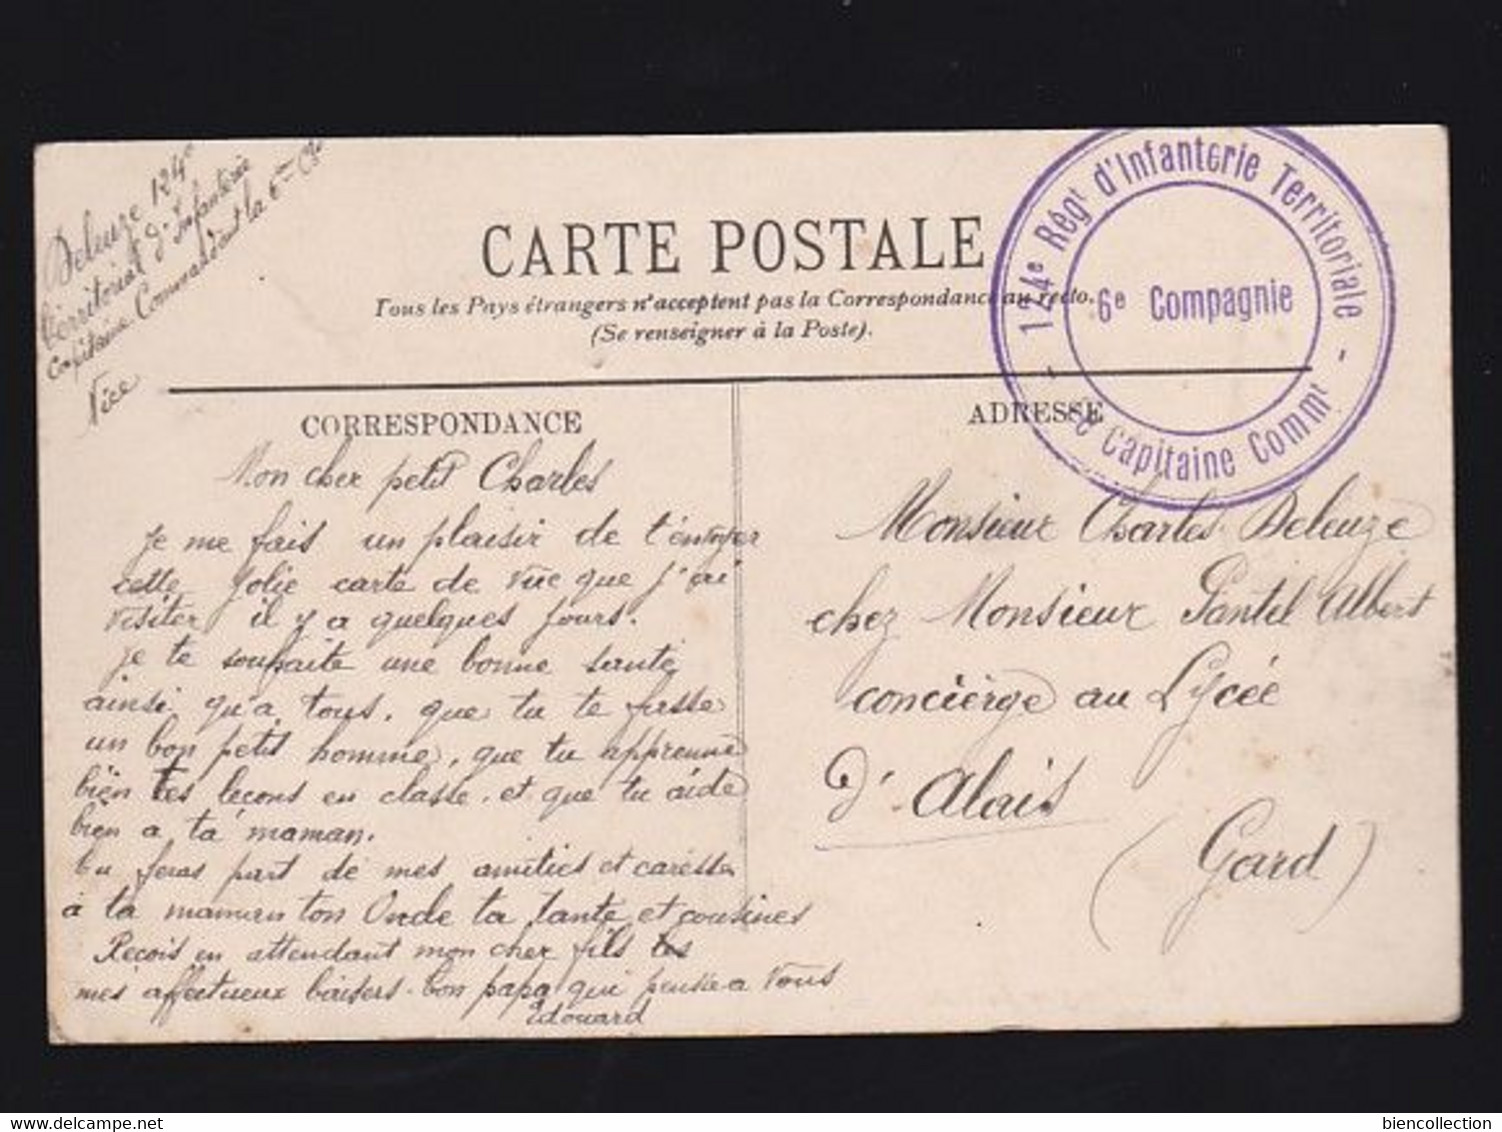 Cachet Du 124eme Regiment D'infanterie Territoriale Sur Carte Postale De Menton (Alpes Maritimes) - 1. Weltkrieg 1914-1918